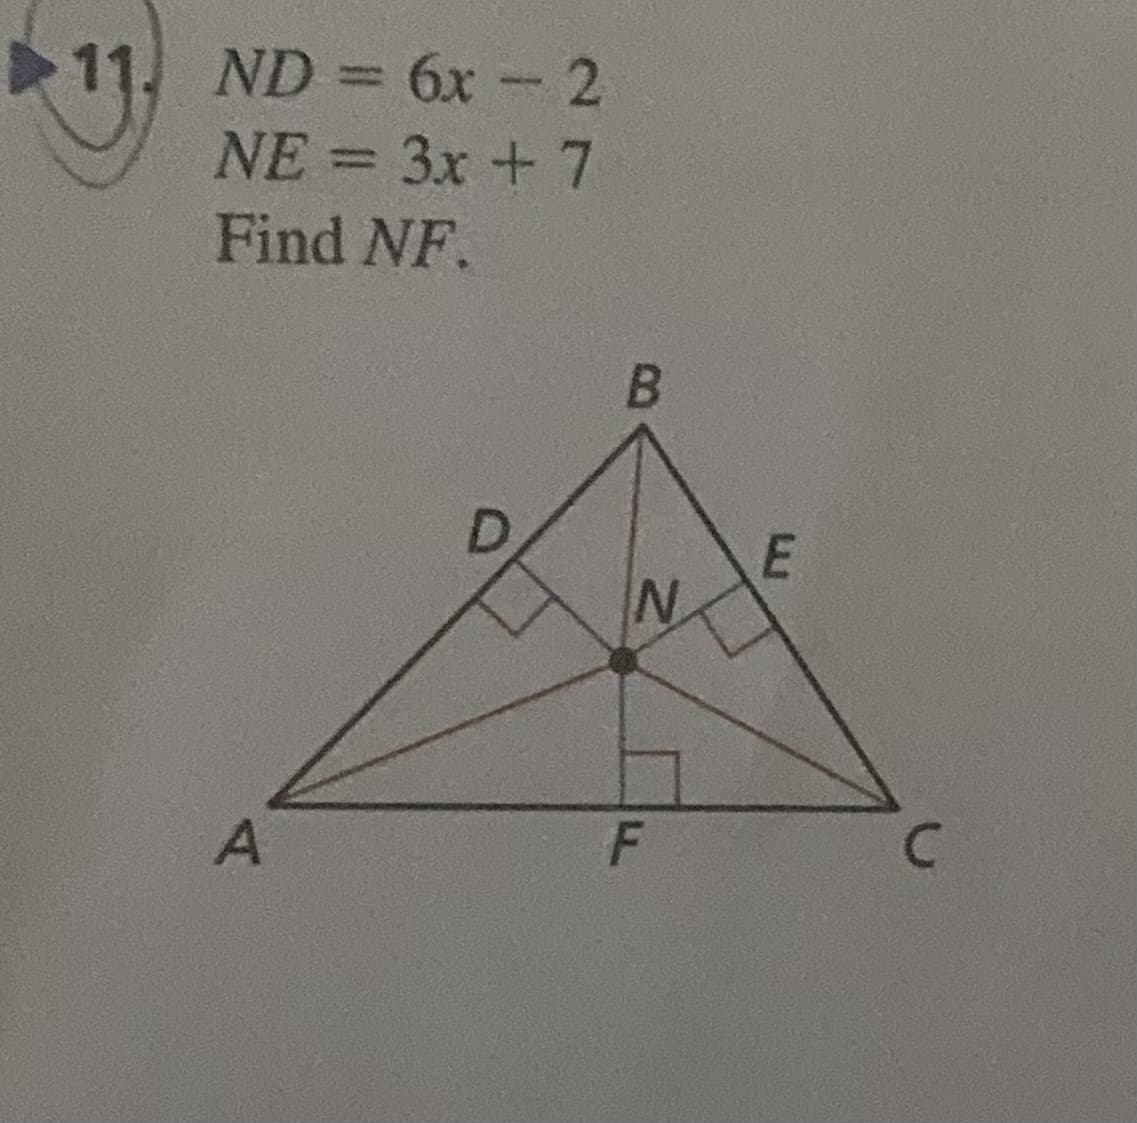 11. ND= 6x - 2
NE = 3x + 7
Find NF.
A
B
N
F
E
с